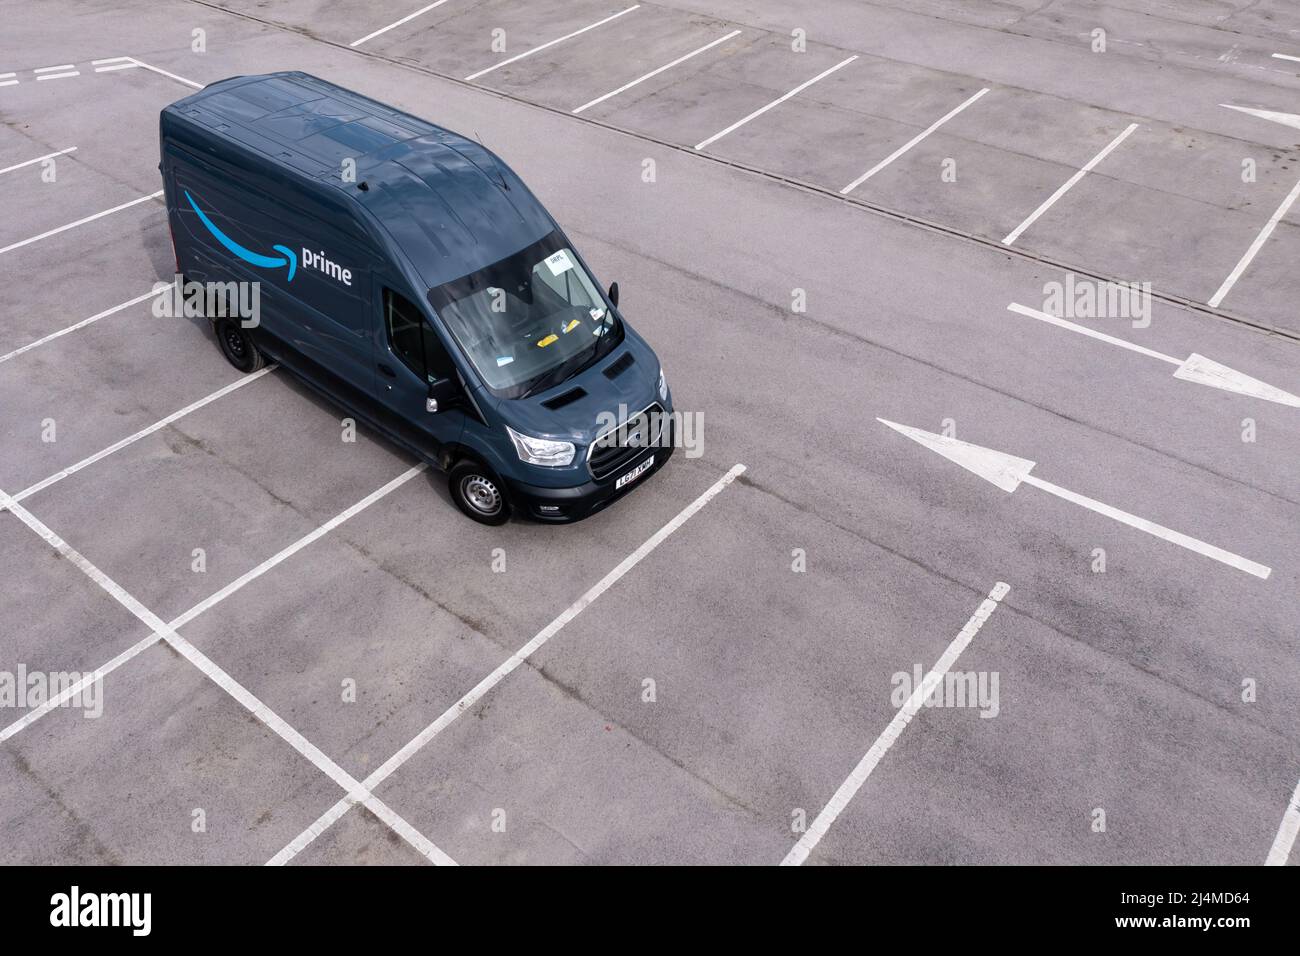 Les camionnettes électriques Amazon Premium Ford E-Transit récemment fabriquées sont prêtes à être expédiées pour livrer des produits avec moins d'émissions Banque D'Images